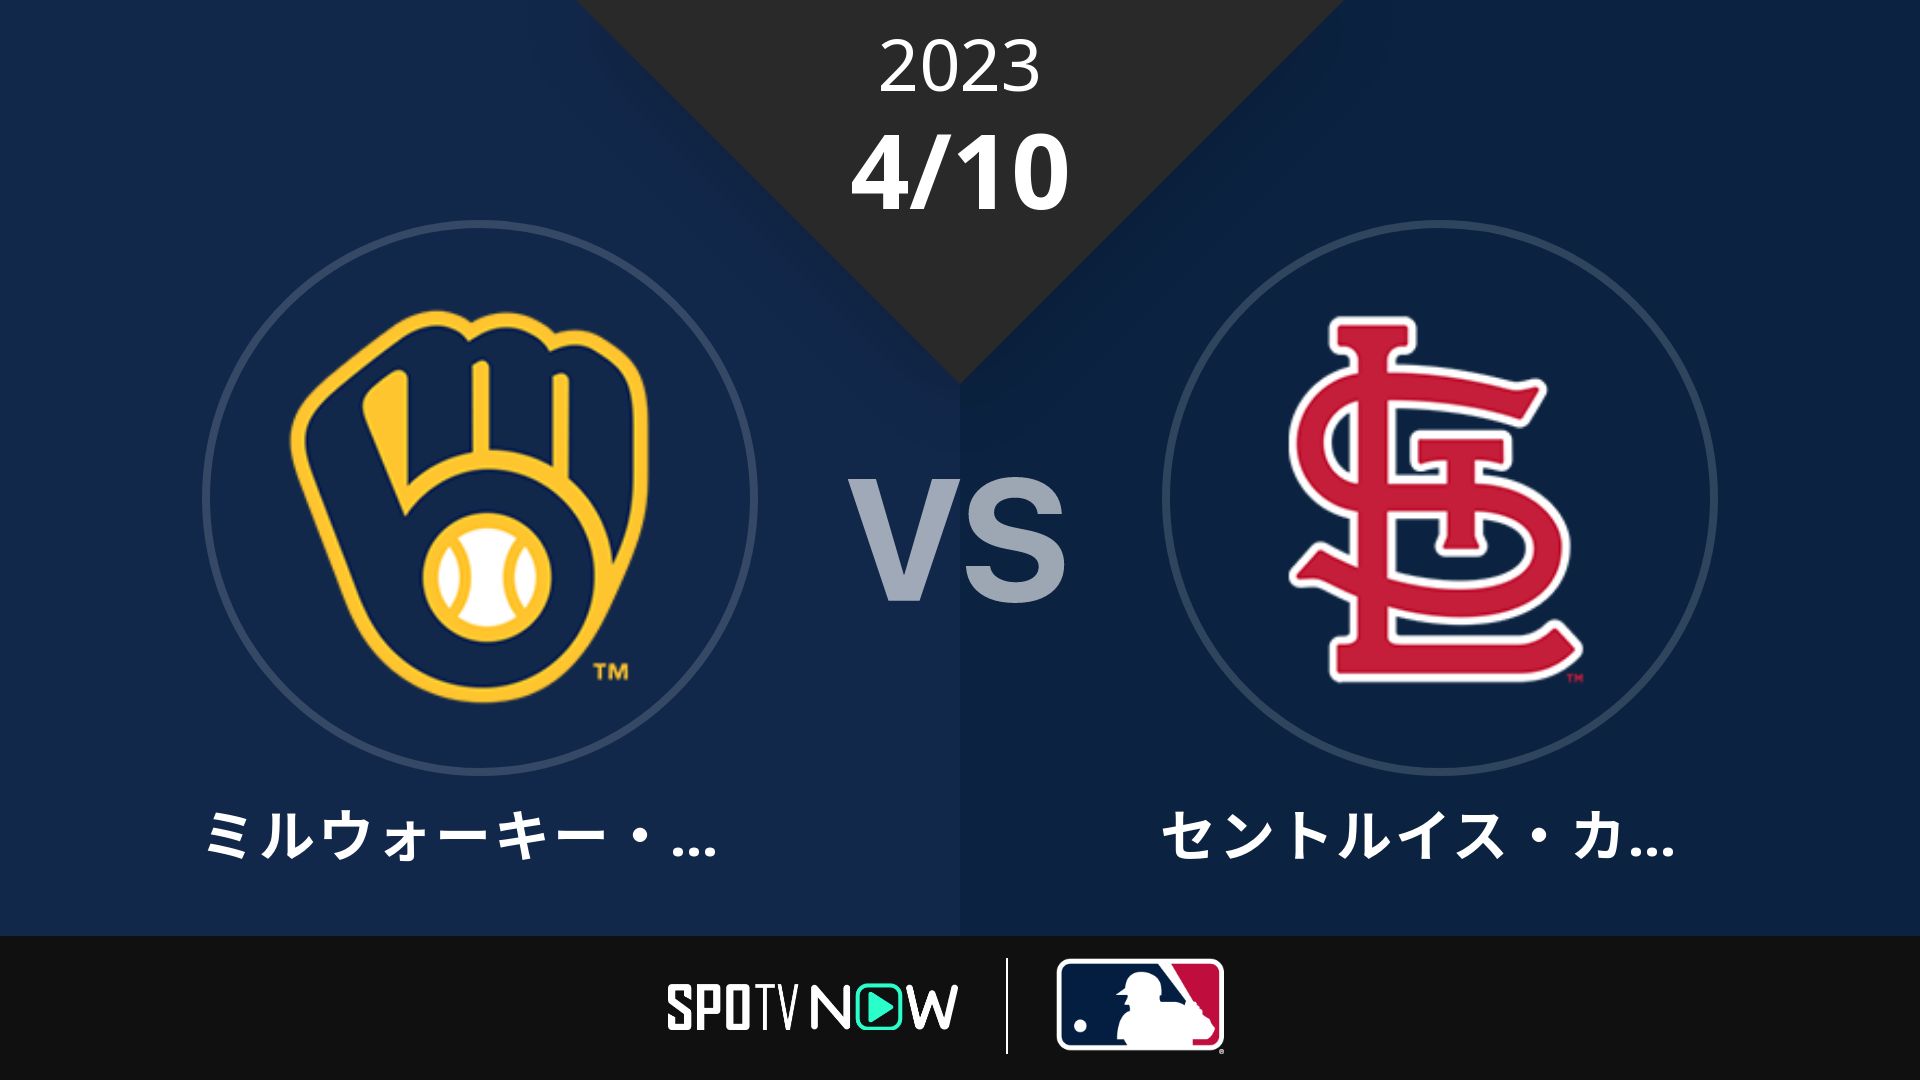 2023/4/10 ブリュワーズ vs カージナルス [MLB]